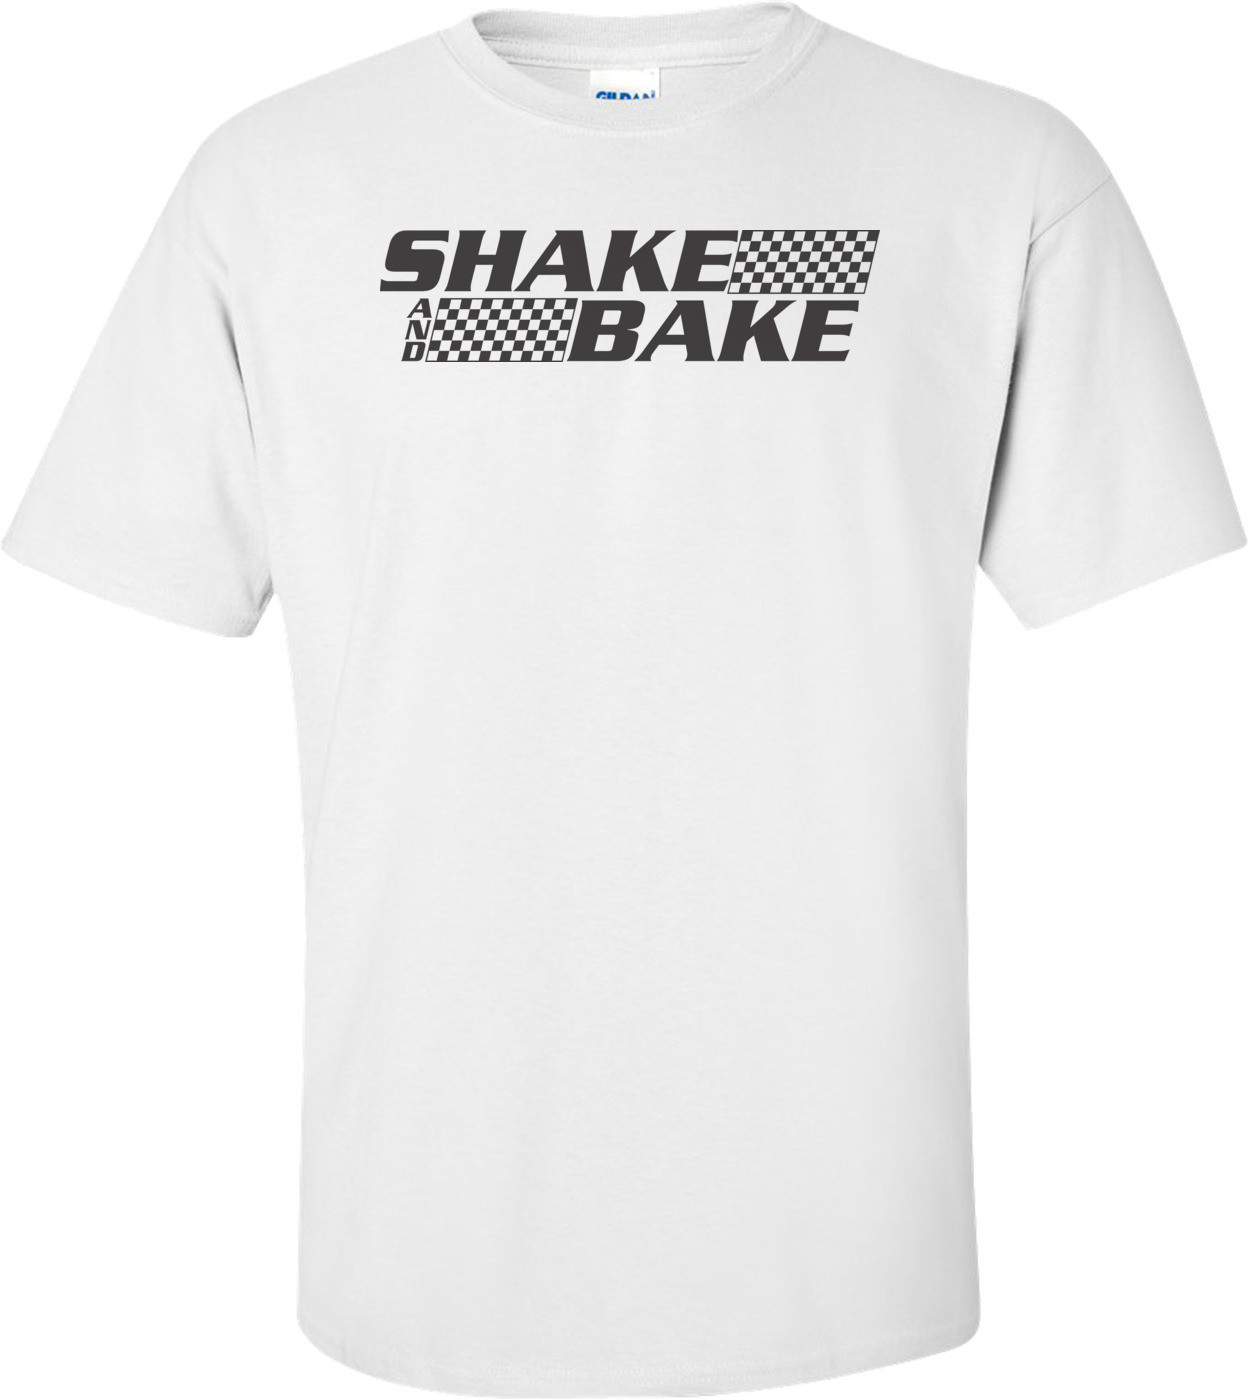 Shake And Bake T-shirt 